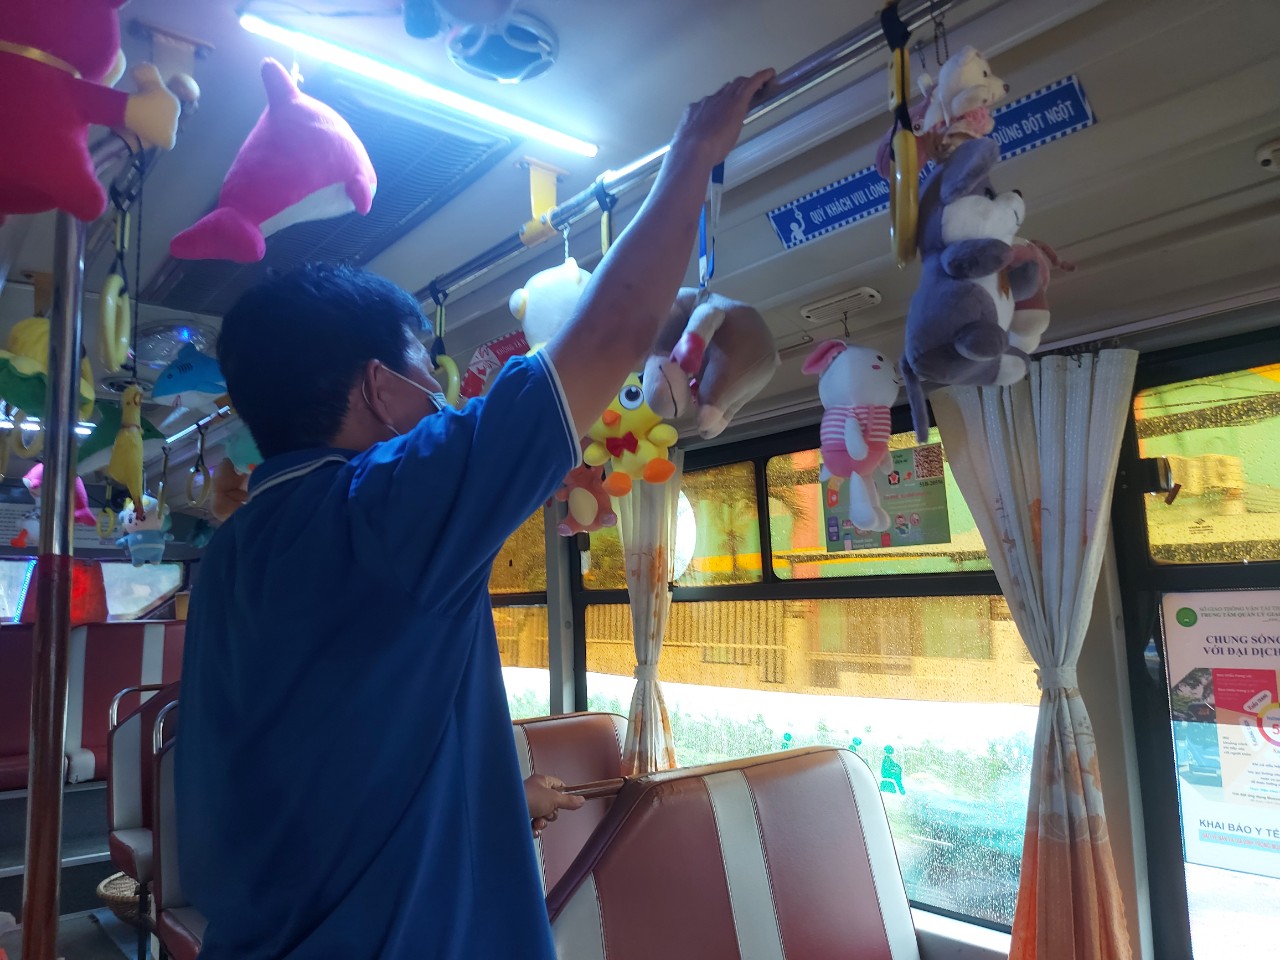 Cận cảnh chuyến xe buýt lạ ở TP HCM  - Ảnh 2.